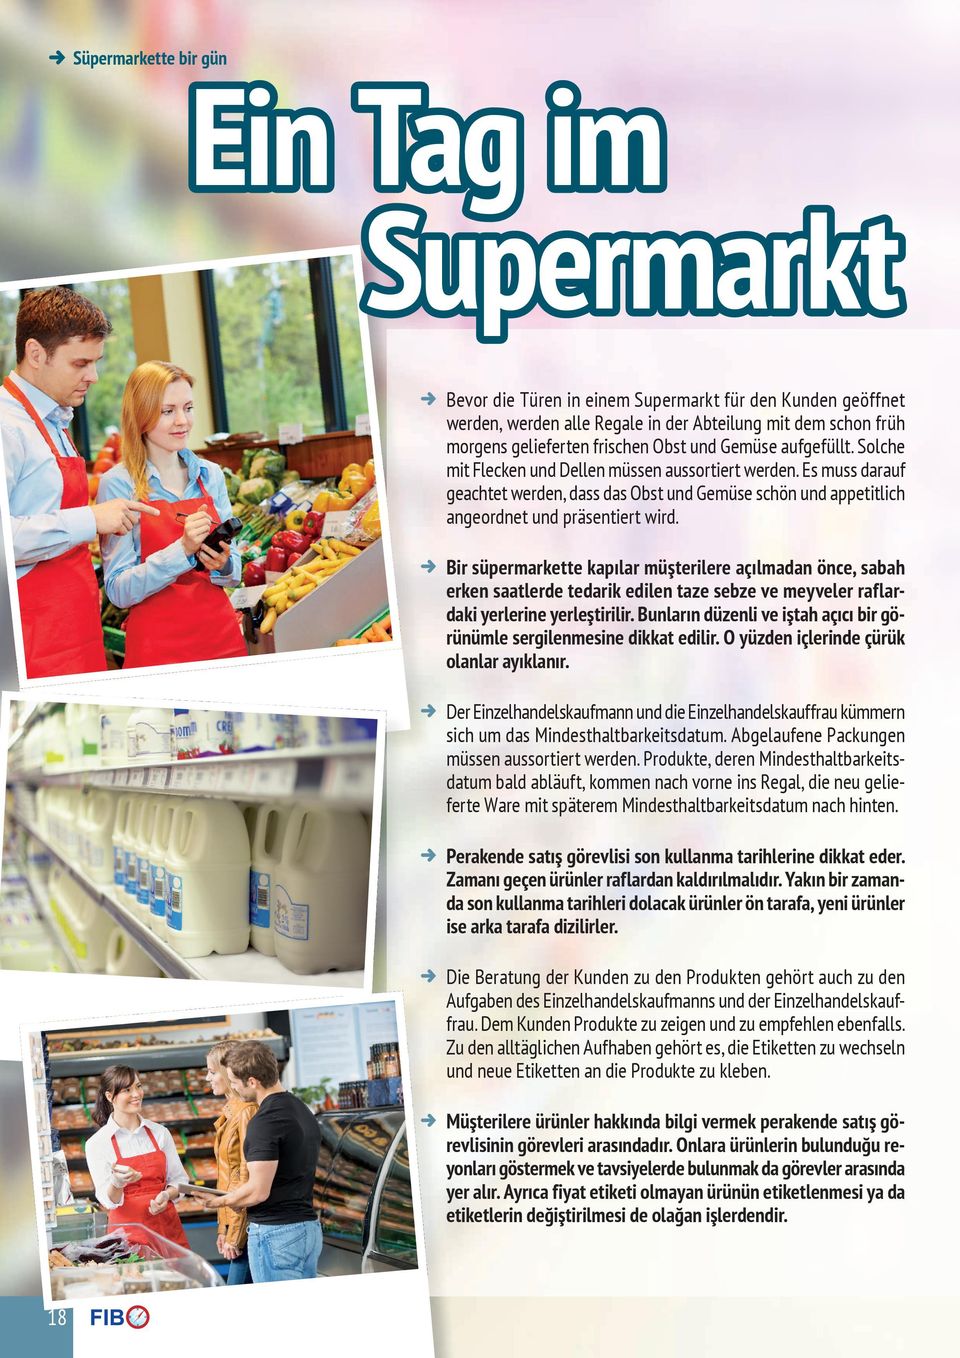 D Bir süpermarkette kapılar müşterilere açılmadan önce, sabah erken saatlerde tedarik edilen taze sebze ve meyveler raflardaki yerlerine yerleştirilir.